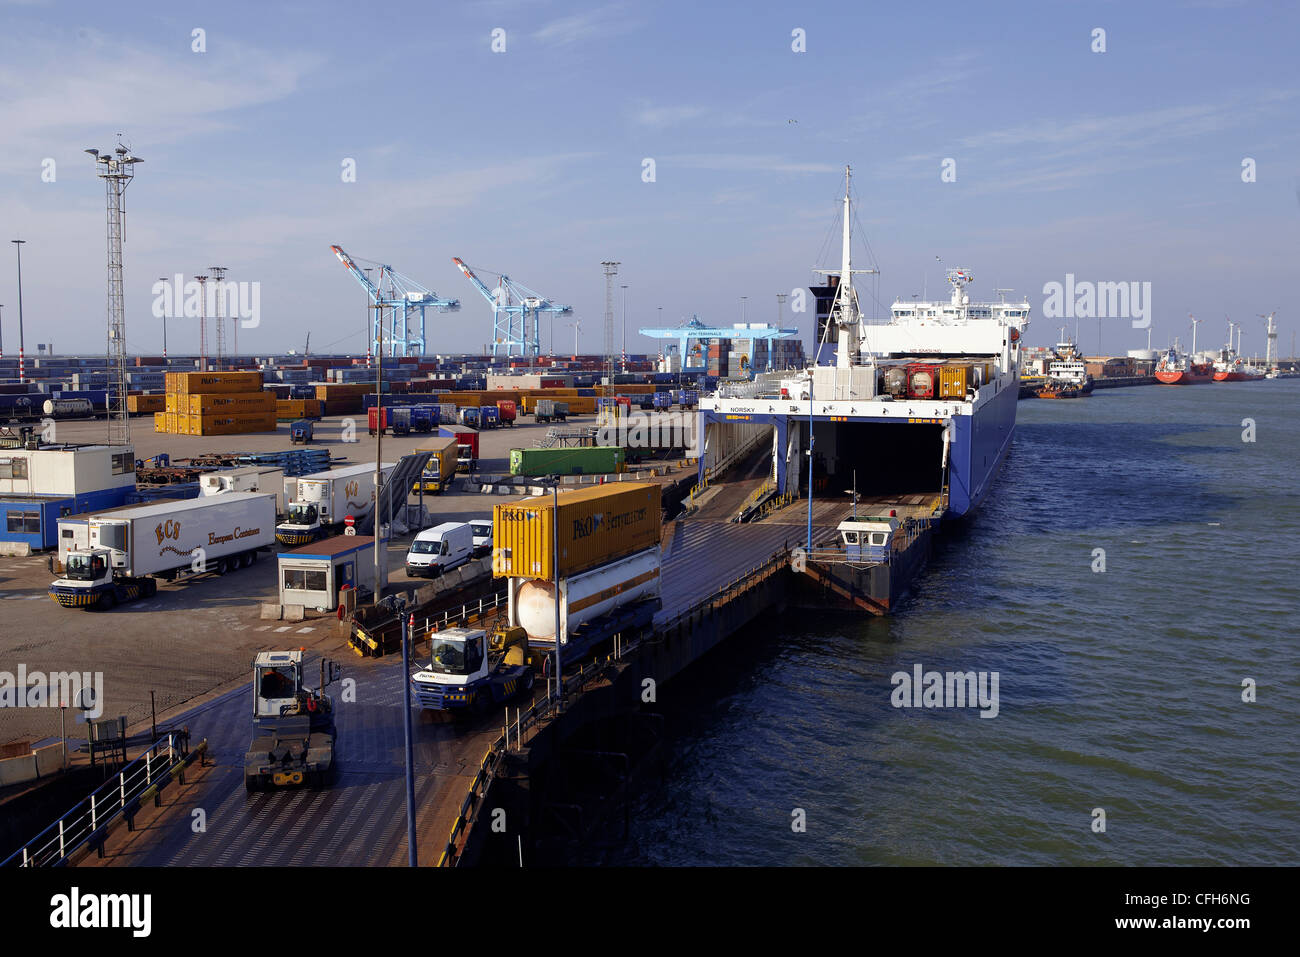 Hafen von Zeebrugge, Belgien Stockfoto, Bild: 44019068 - Alamy